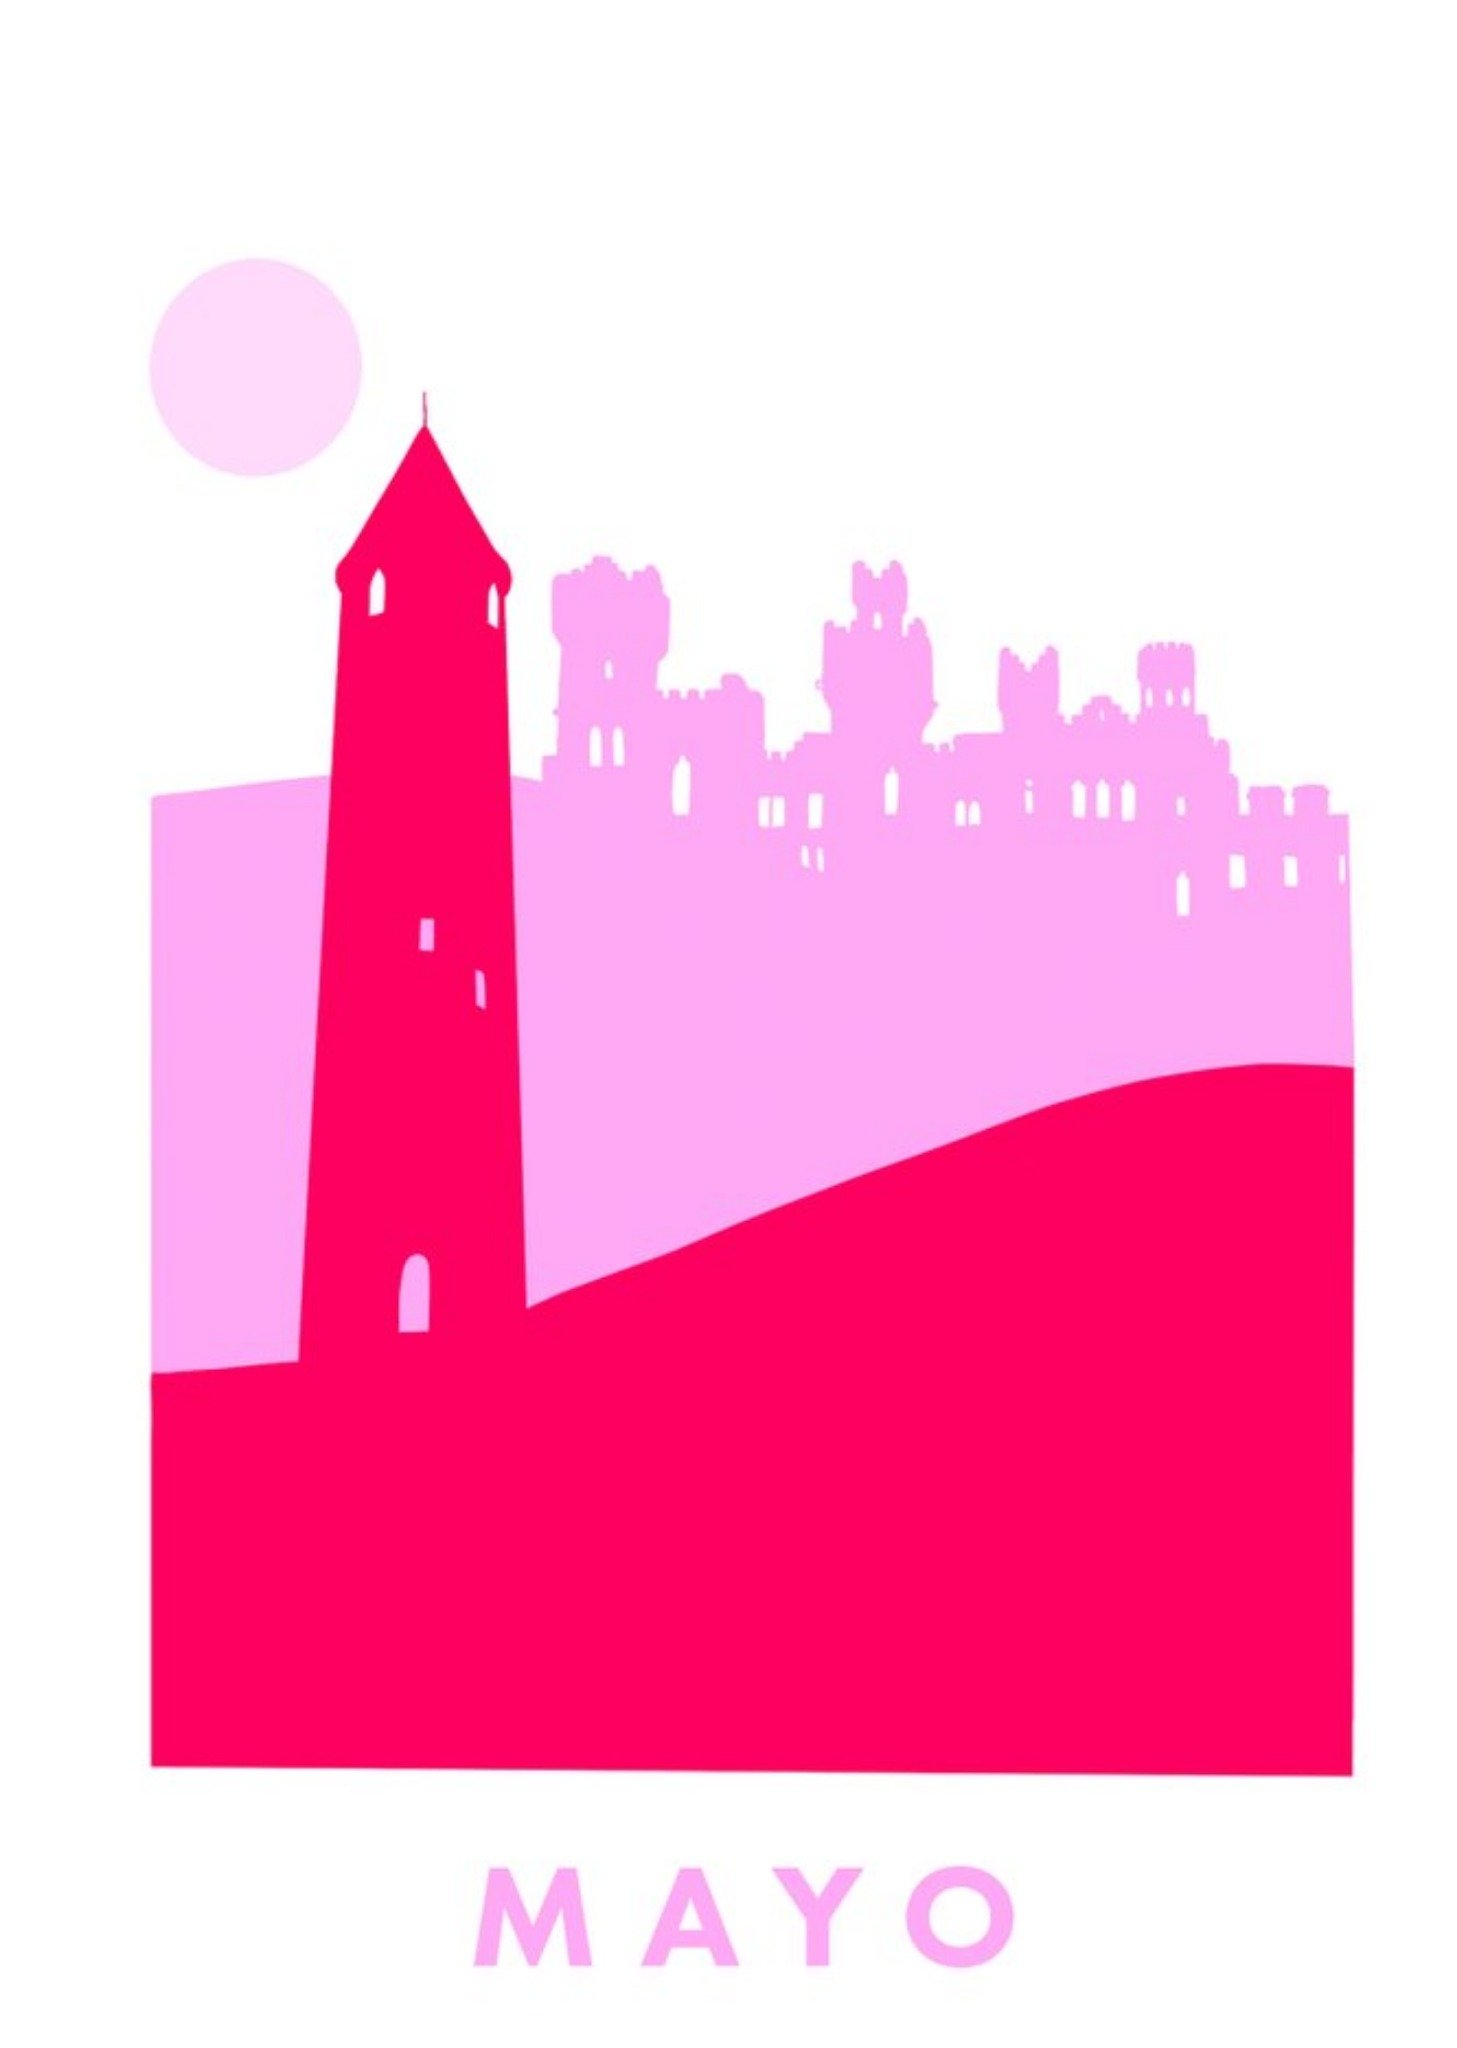 Moonpig Floillustrate Illustration Red Pink General Card Ecard